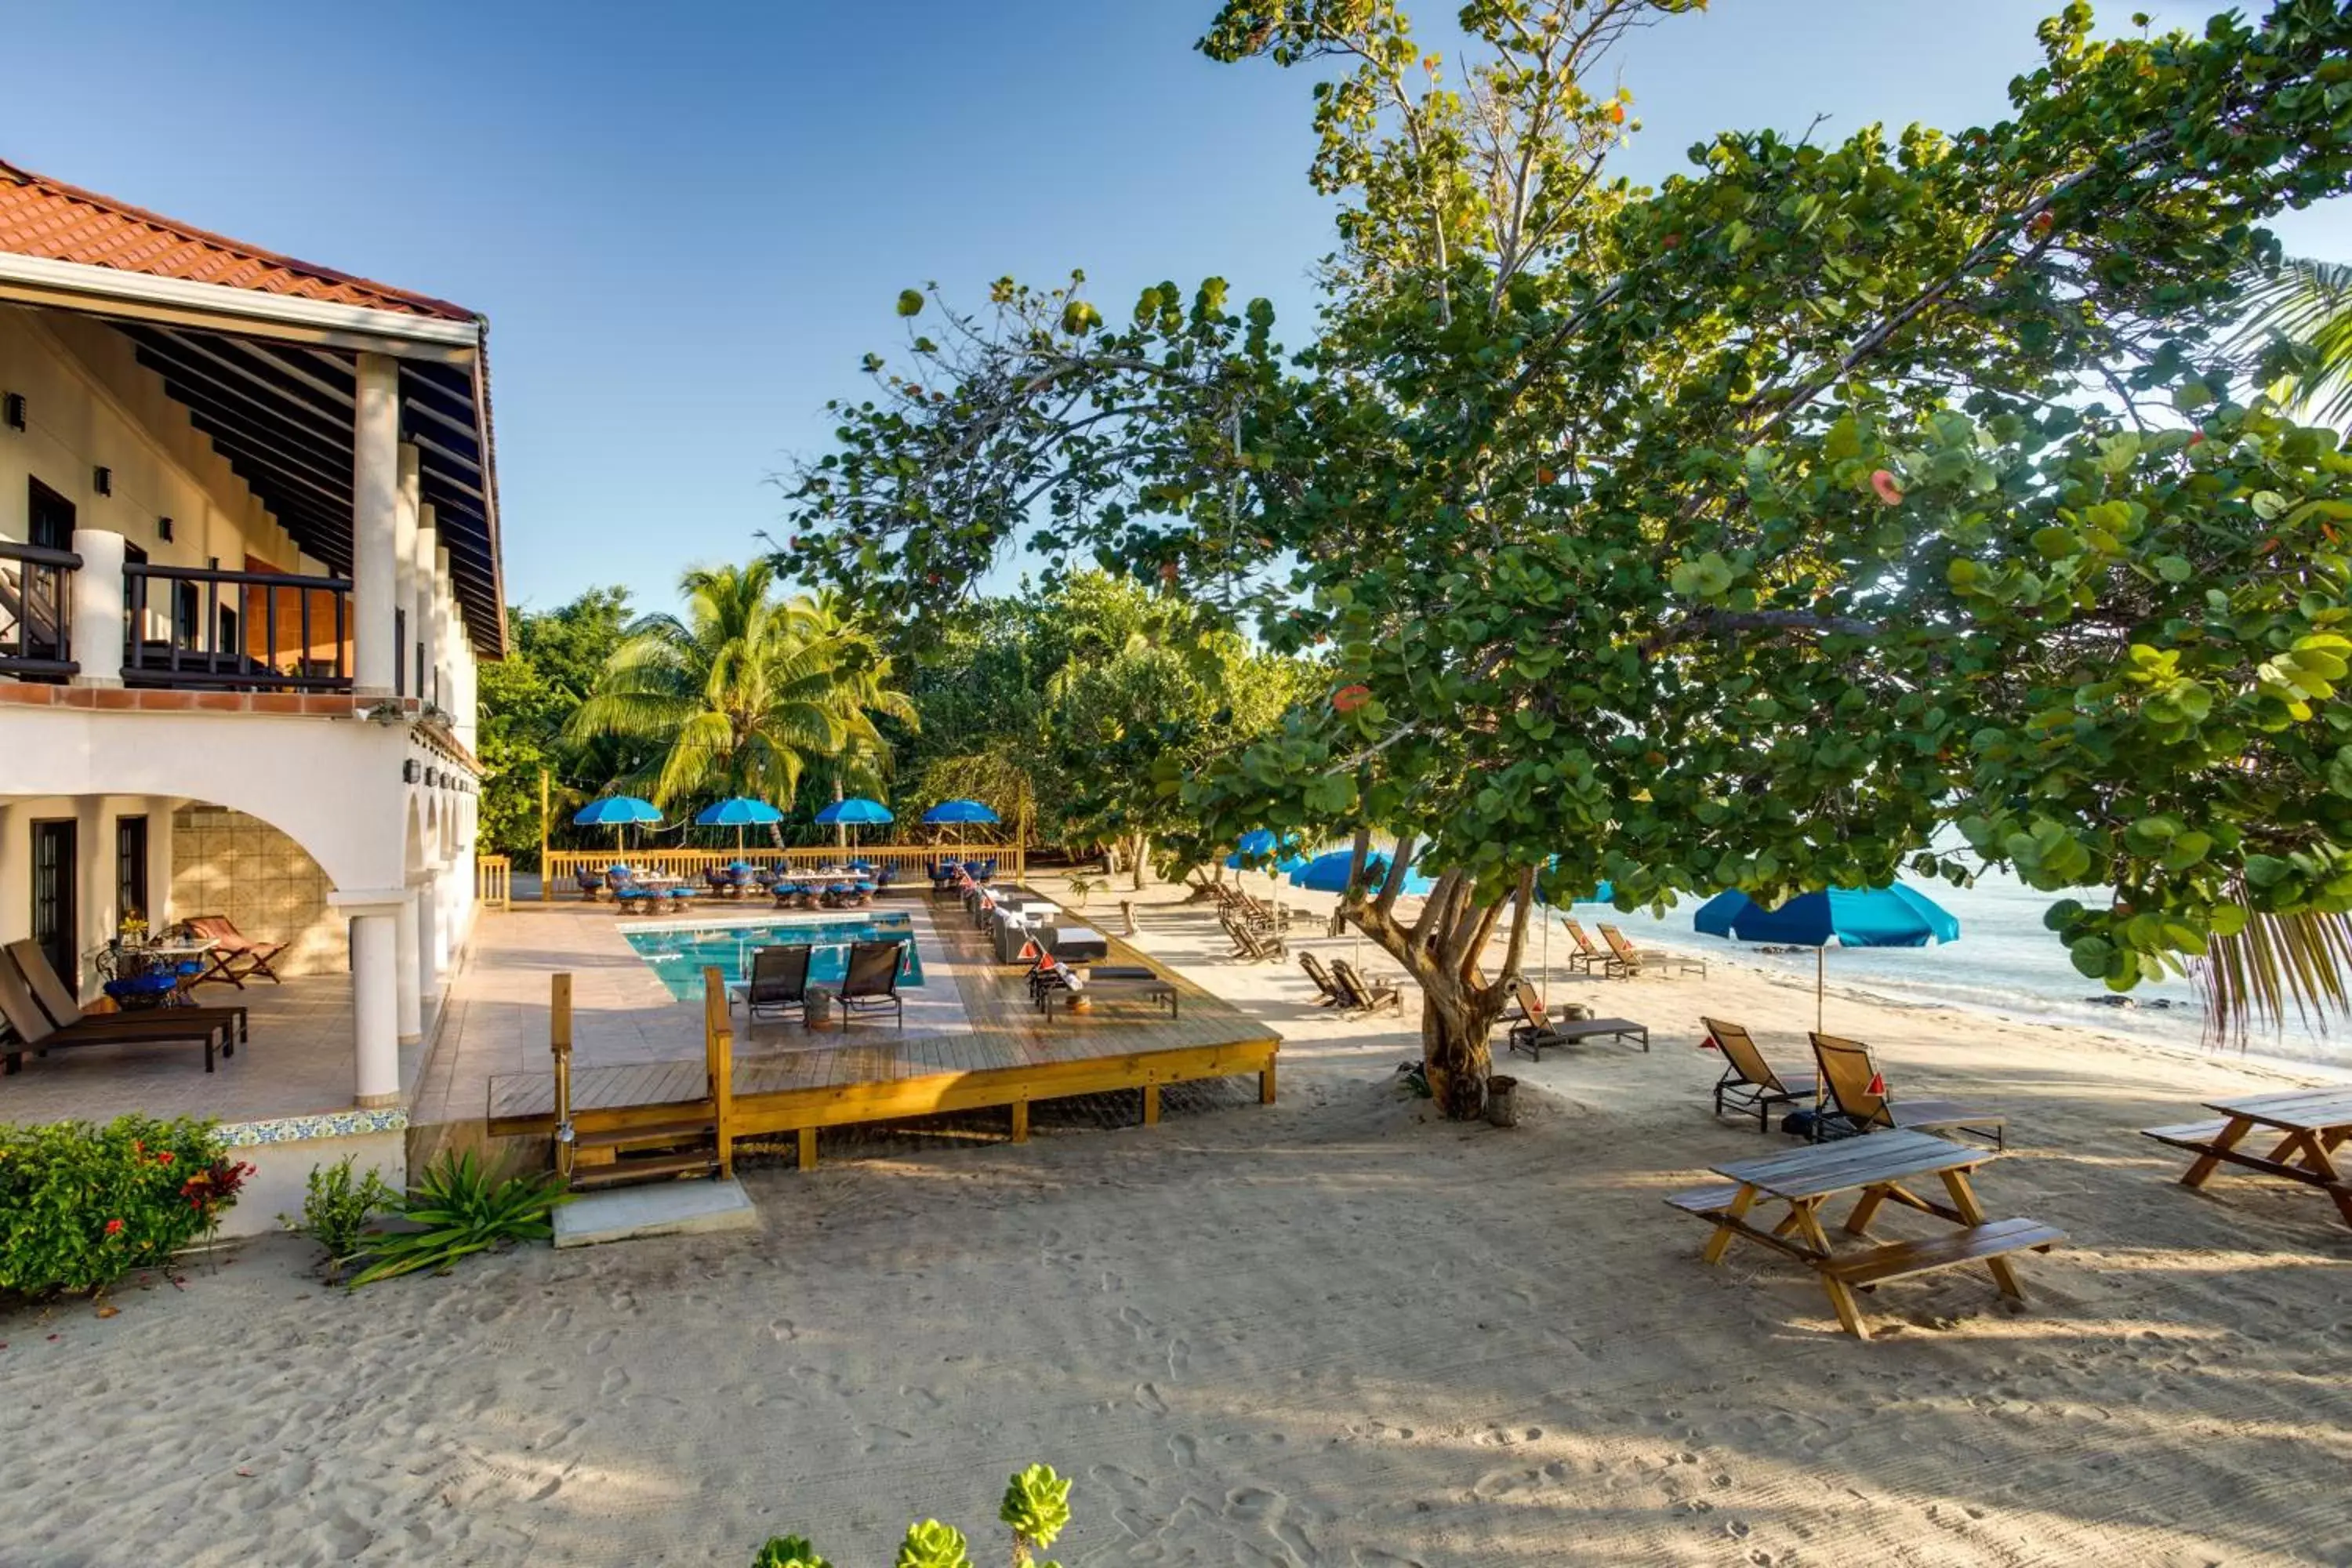 Property building in Mariposa Belize Beach Resort